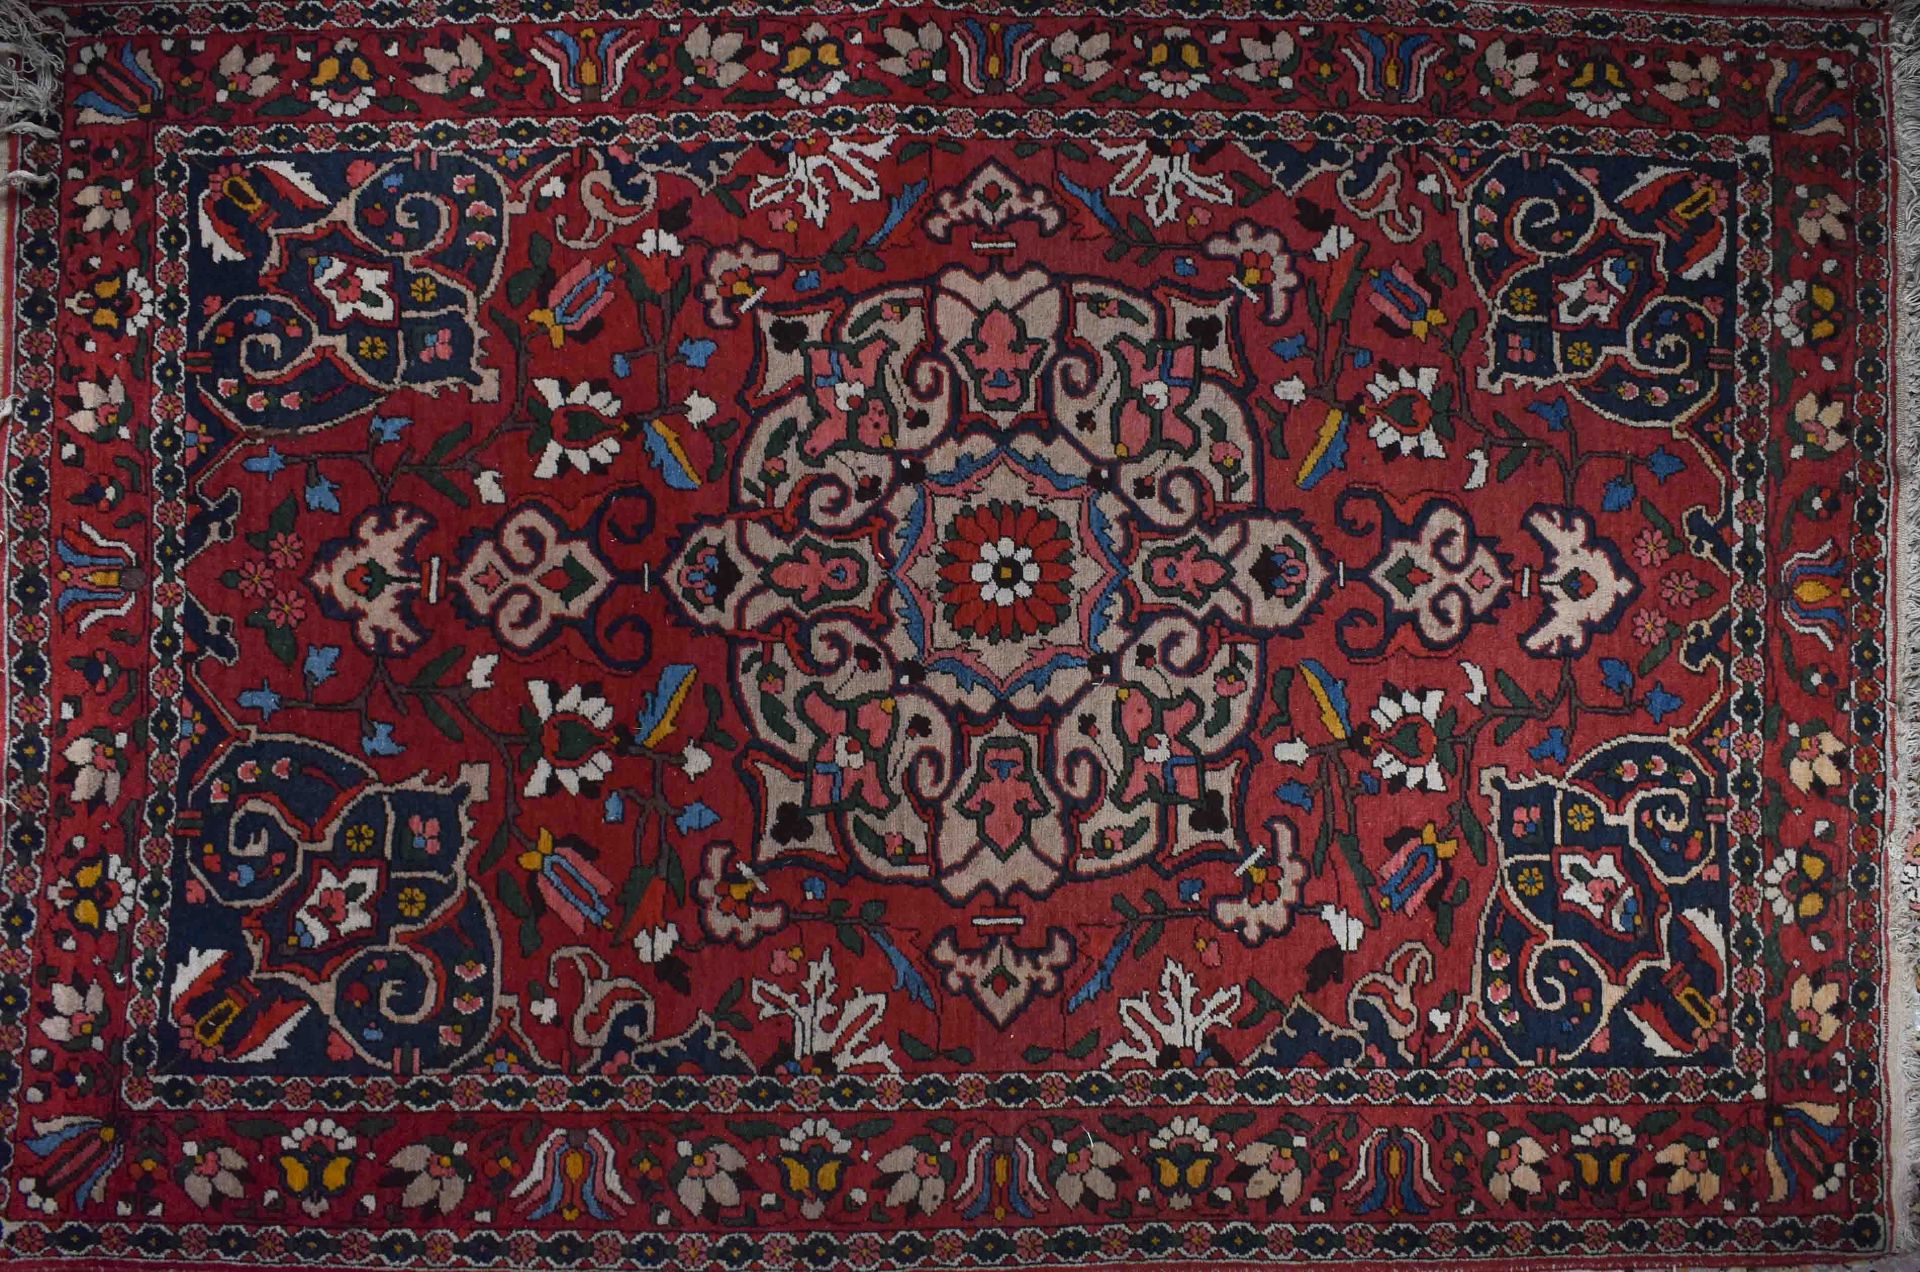 Old oriental carpet214 cm x 141 cmAlter Orientalischer Teppich214 cm x 141 cm